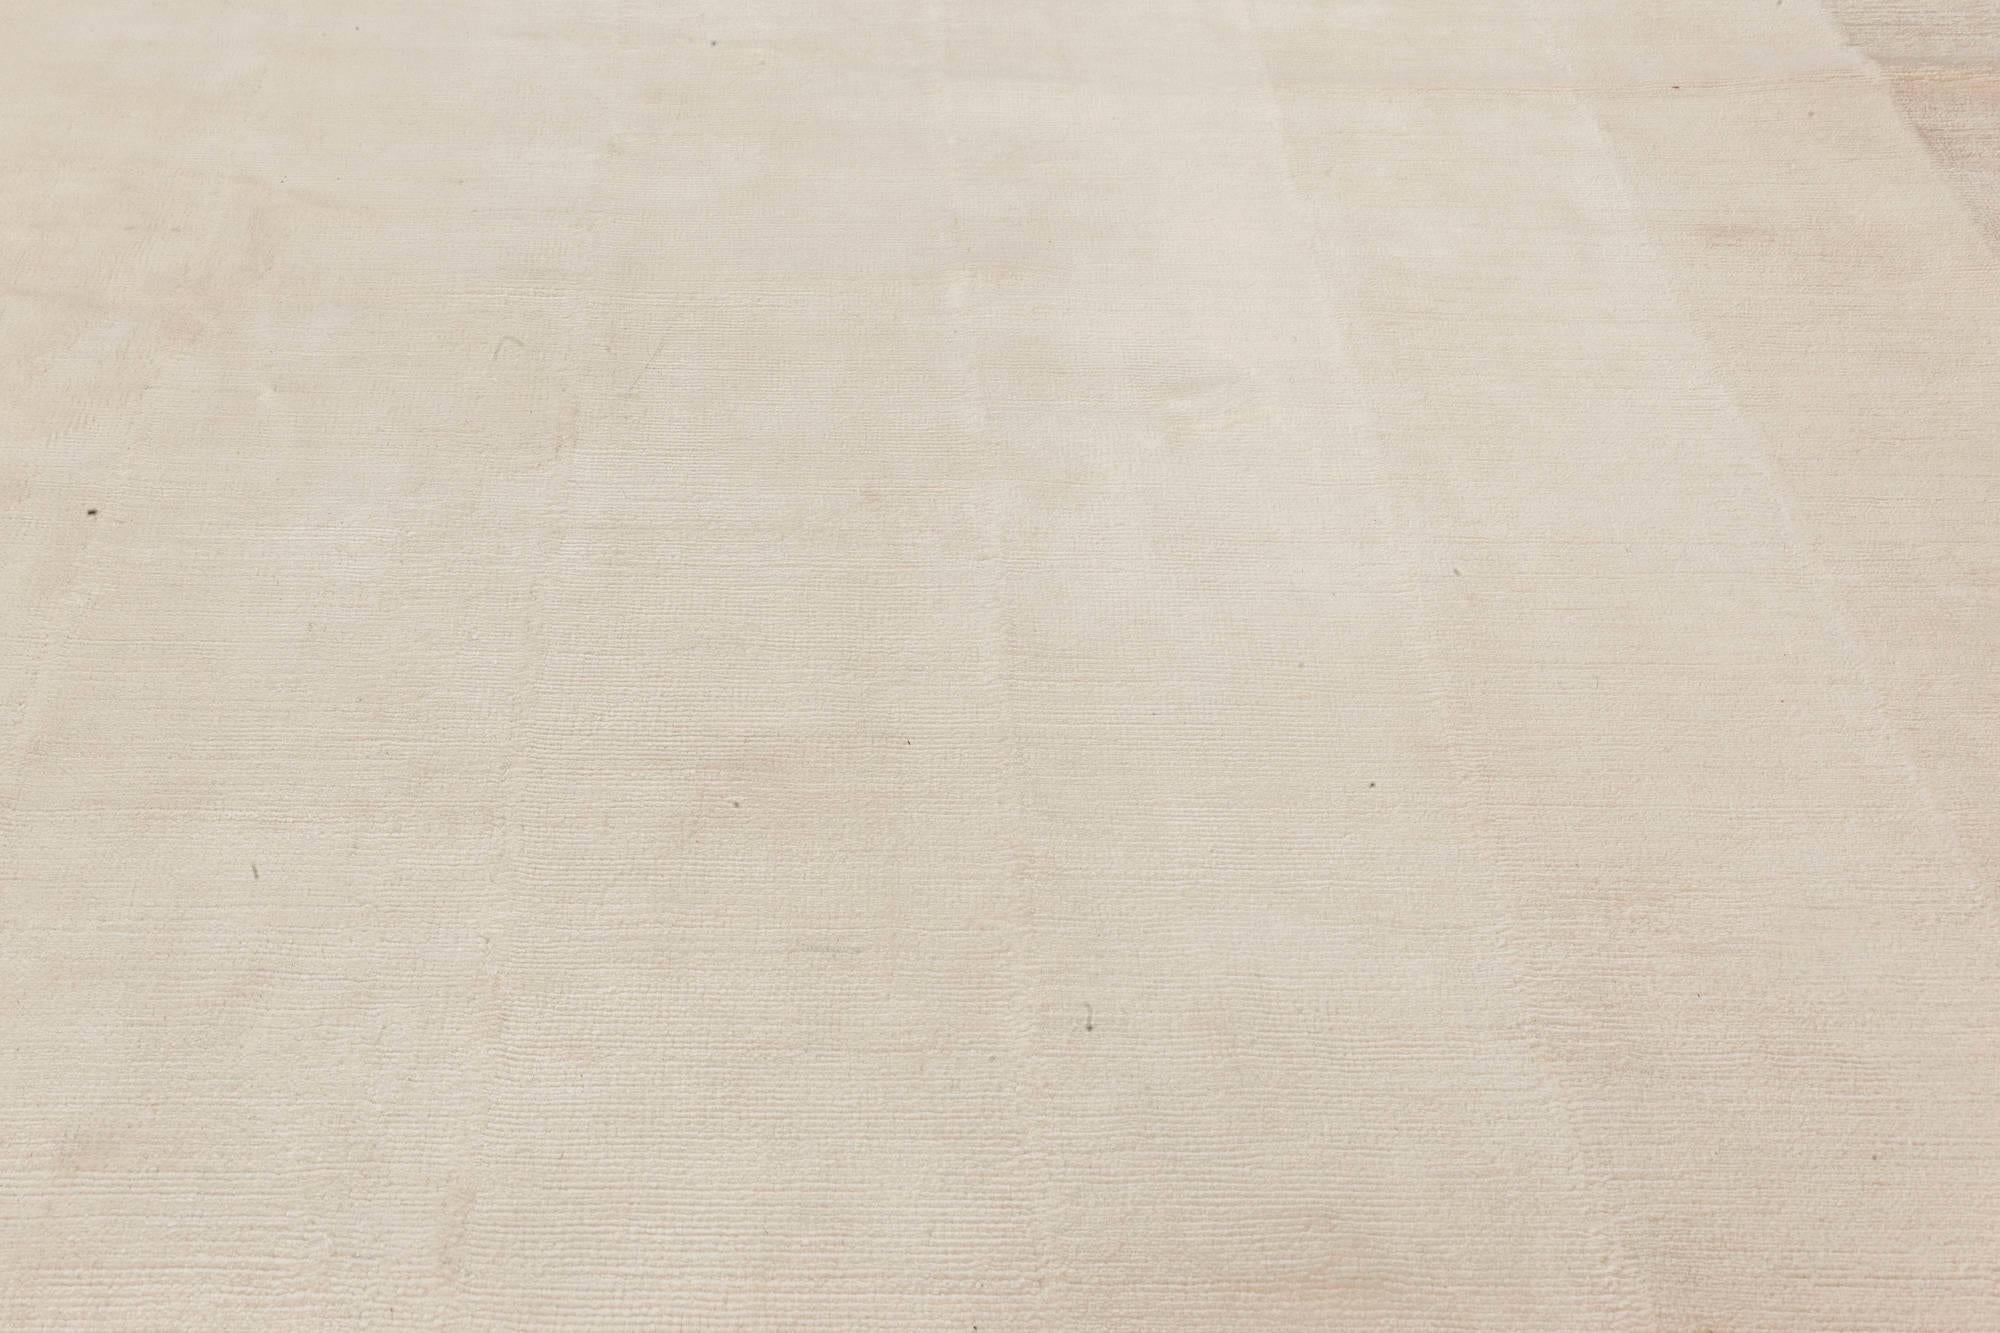 Hommage an das Quadrat nach Josef Albers Teppich von Doris Leslie Blau.
Größe: 304 × 457 cm (10'0